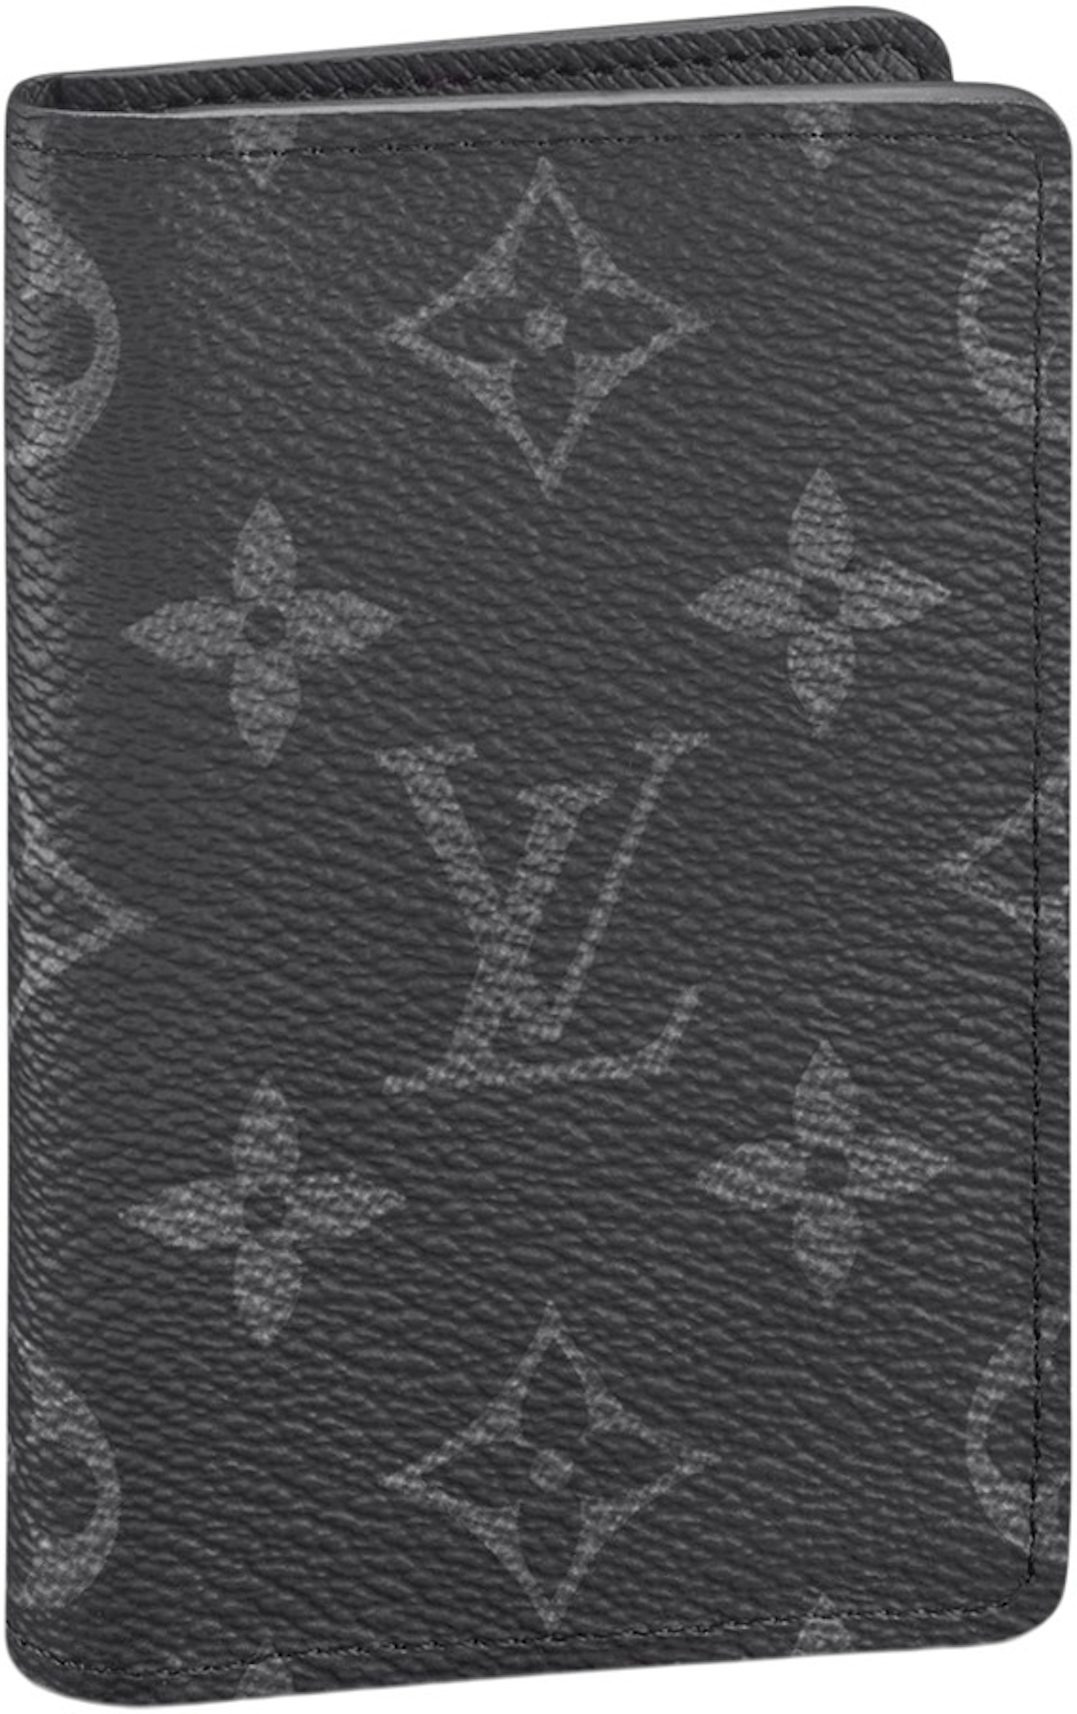 Louis Vuitton  Shop our Louis Vuitton bags, shoes and accessories — LSC INC